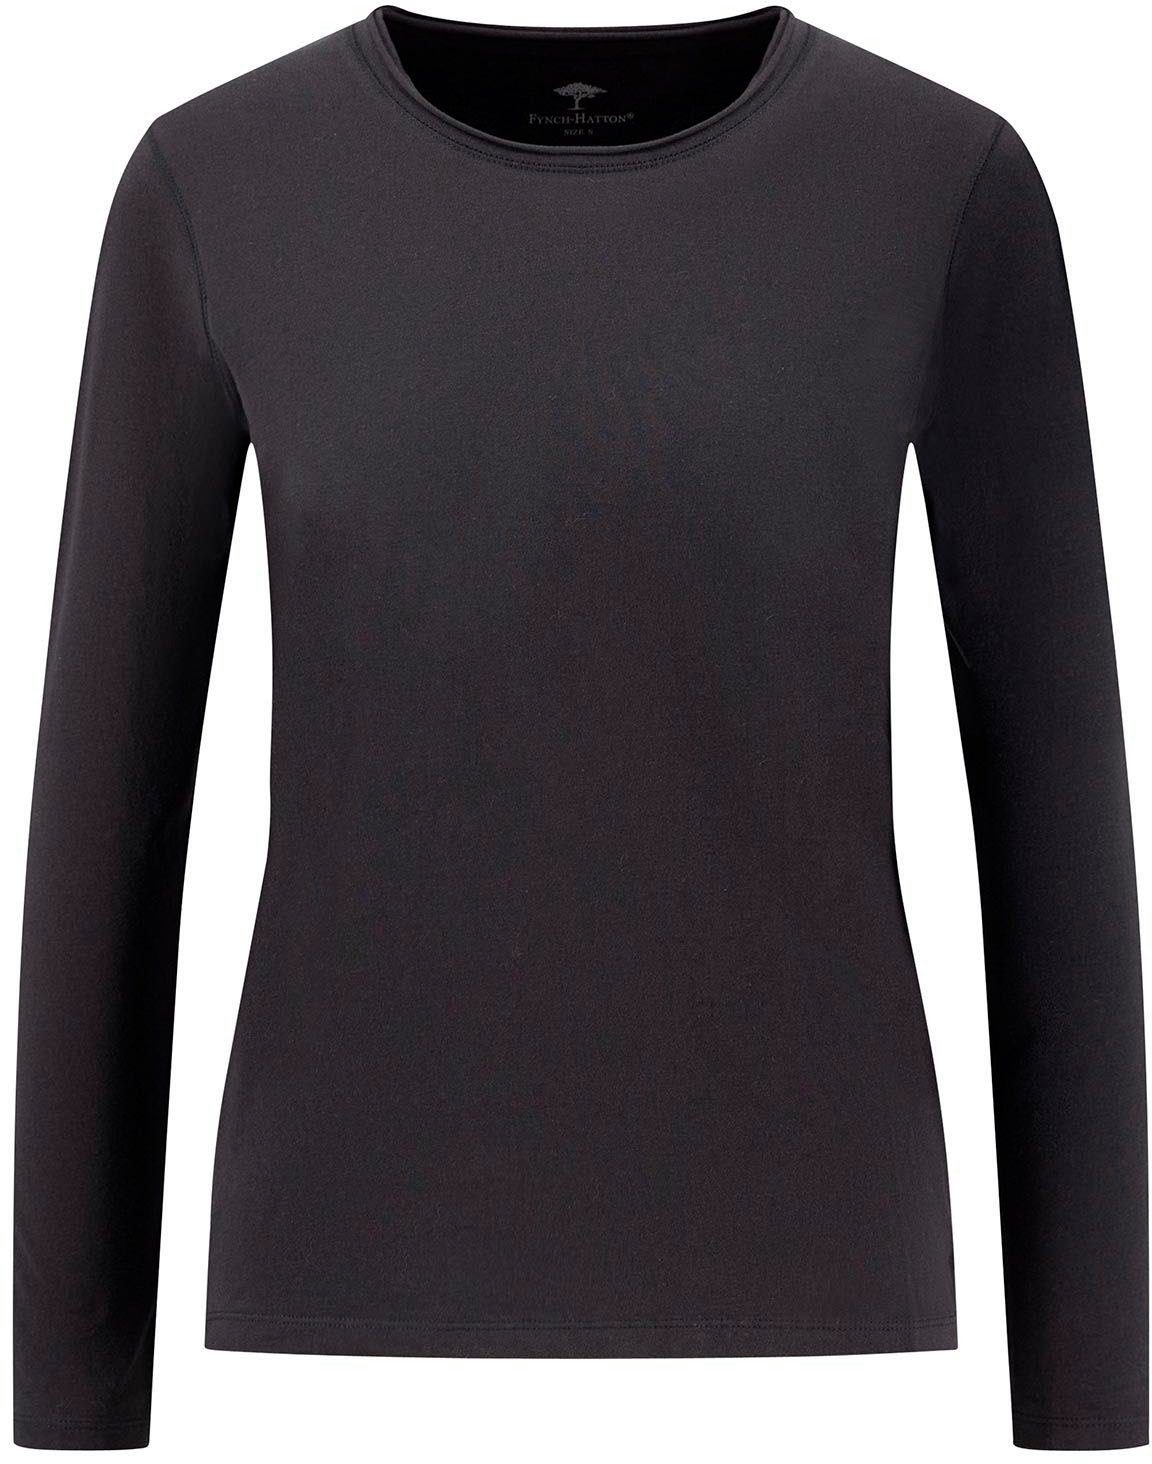 Fynch-Hatton Shirts für Damen kaufen OTTO | online